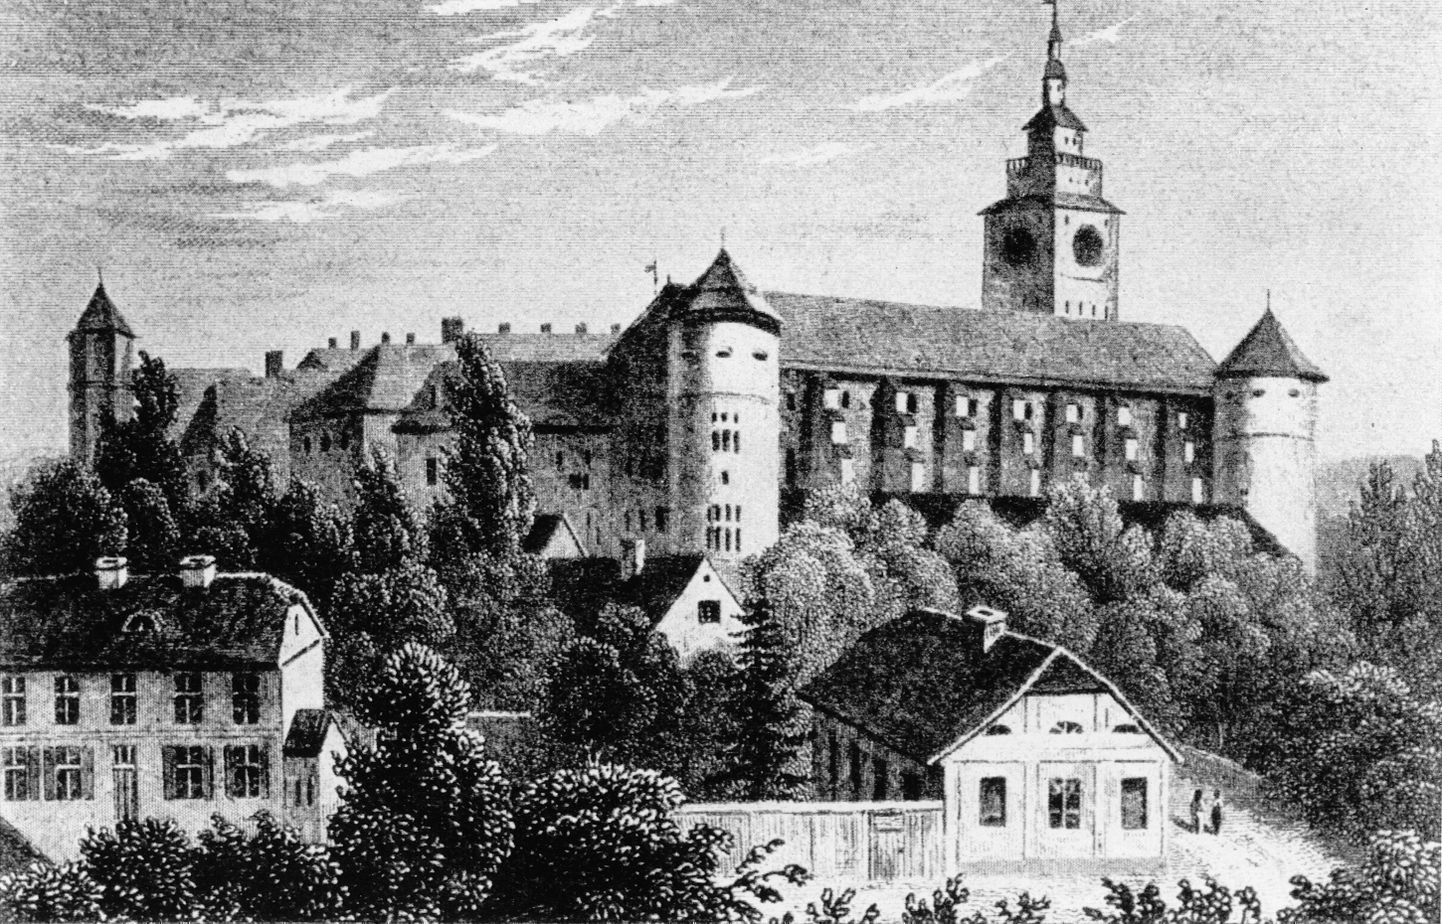 Кенигсбергский замок когда-то был одной из достопримечательностей Пруссии того времени. На территории замка когда-то располагалось древнепрусское поселение, которое дало начало городу Кенигсбергу. Замок был разрушен во время Второй мировой войны.